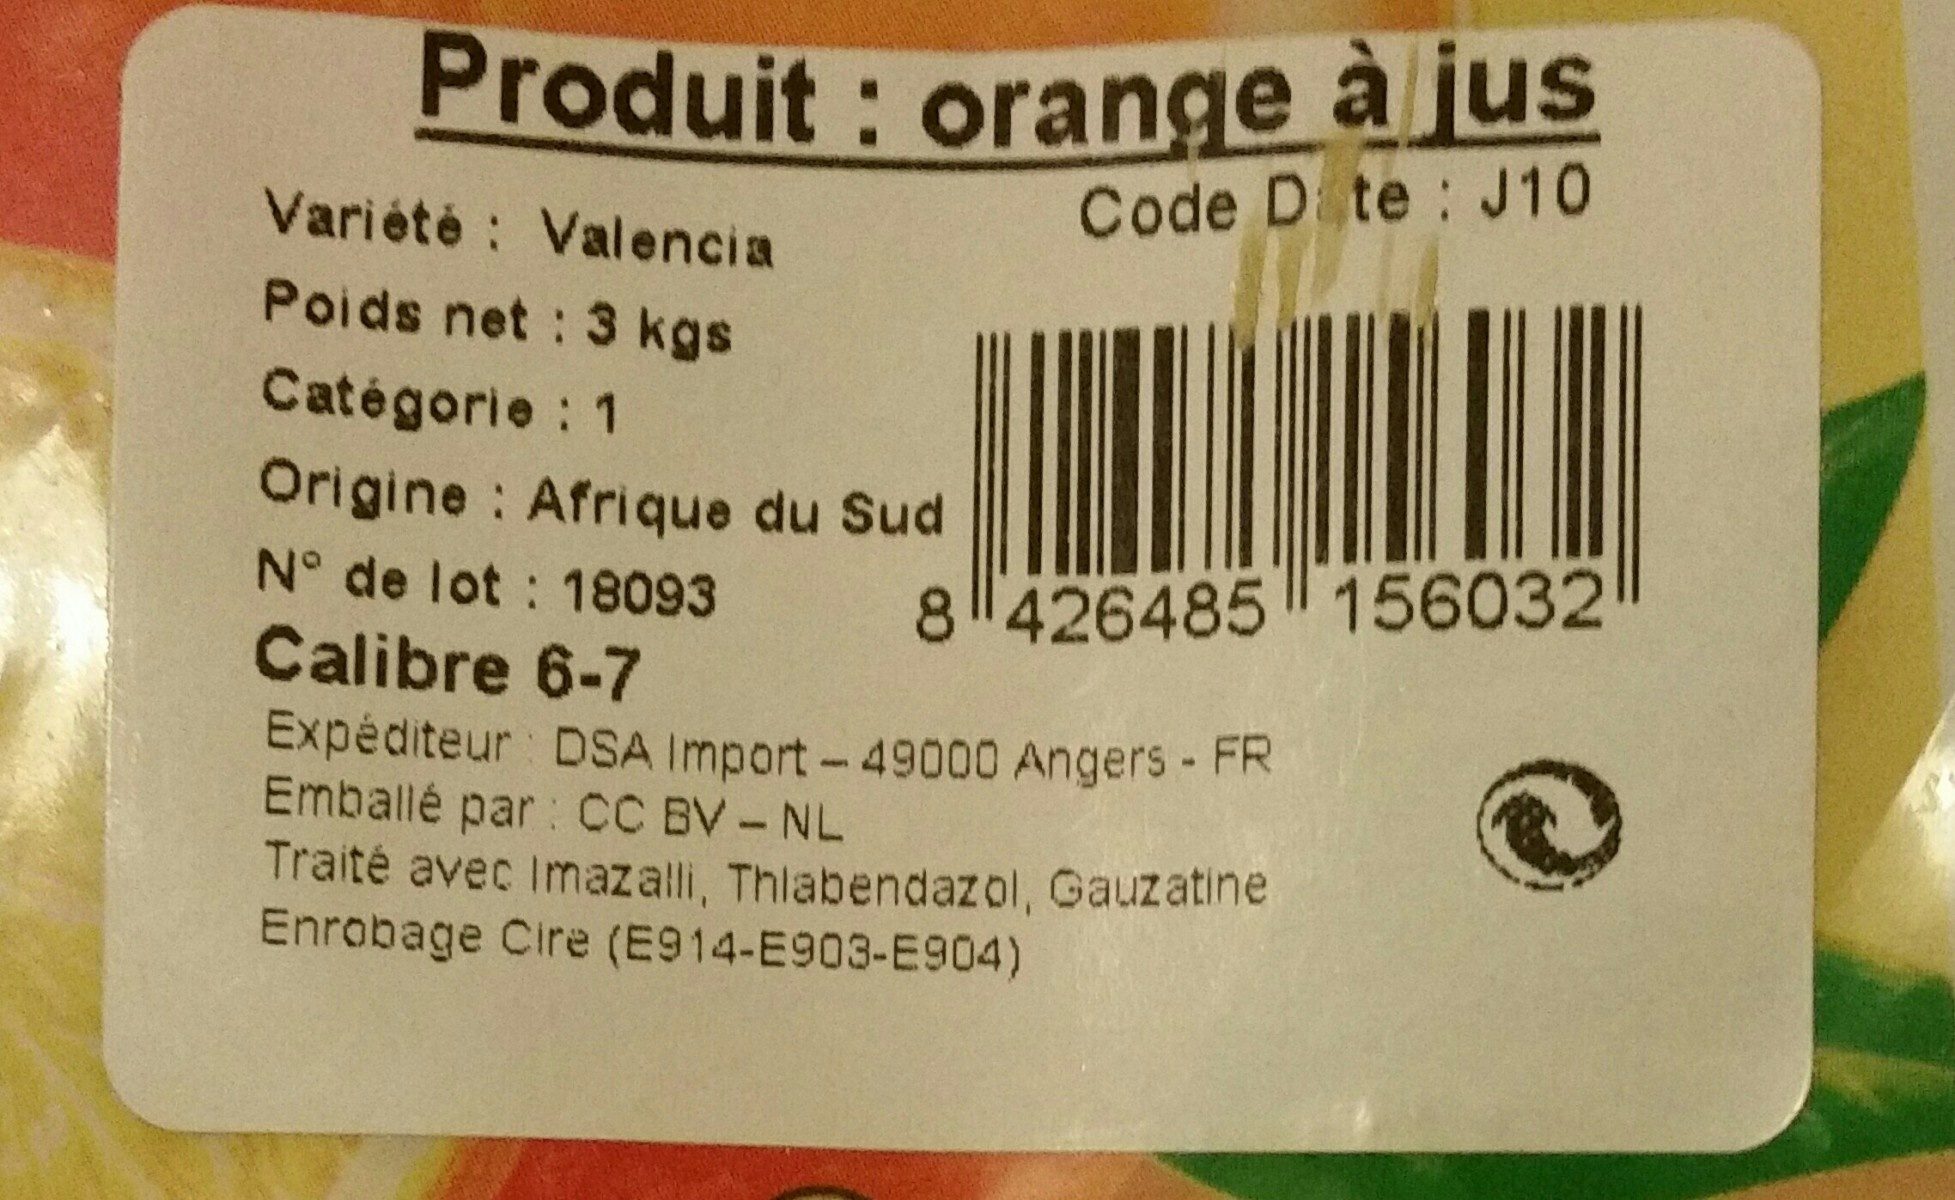 Oranges a jus - Ingredients - fr